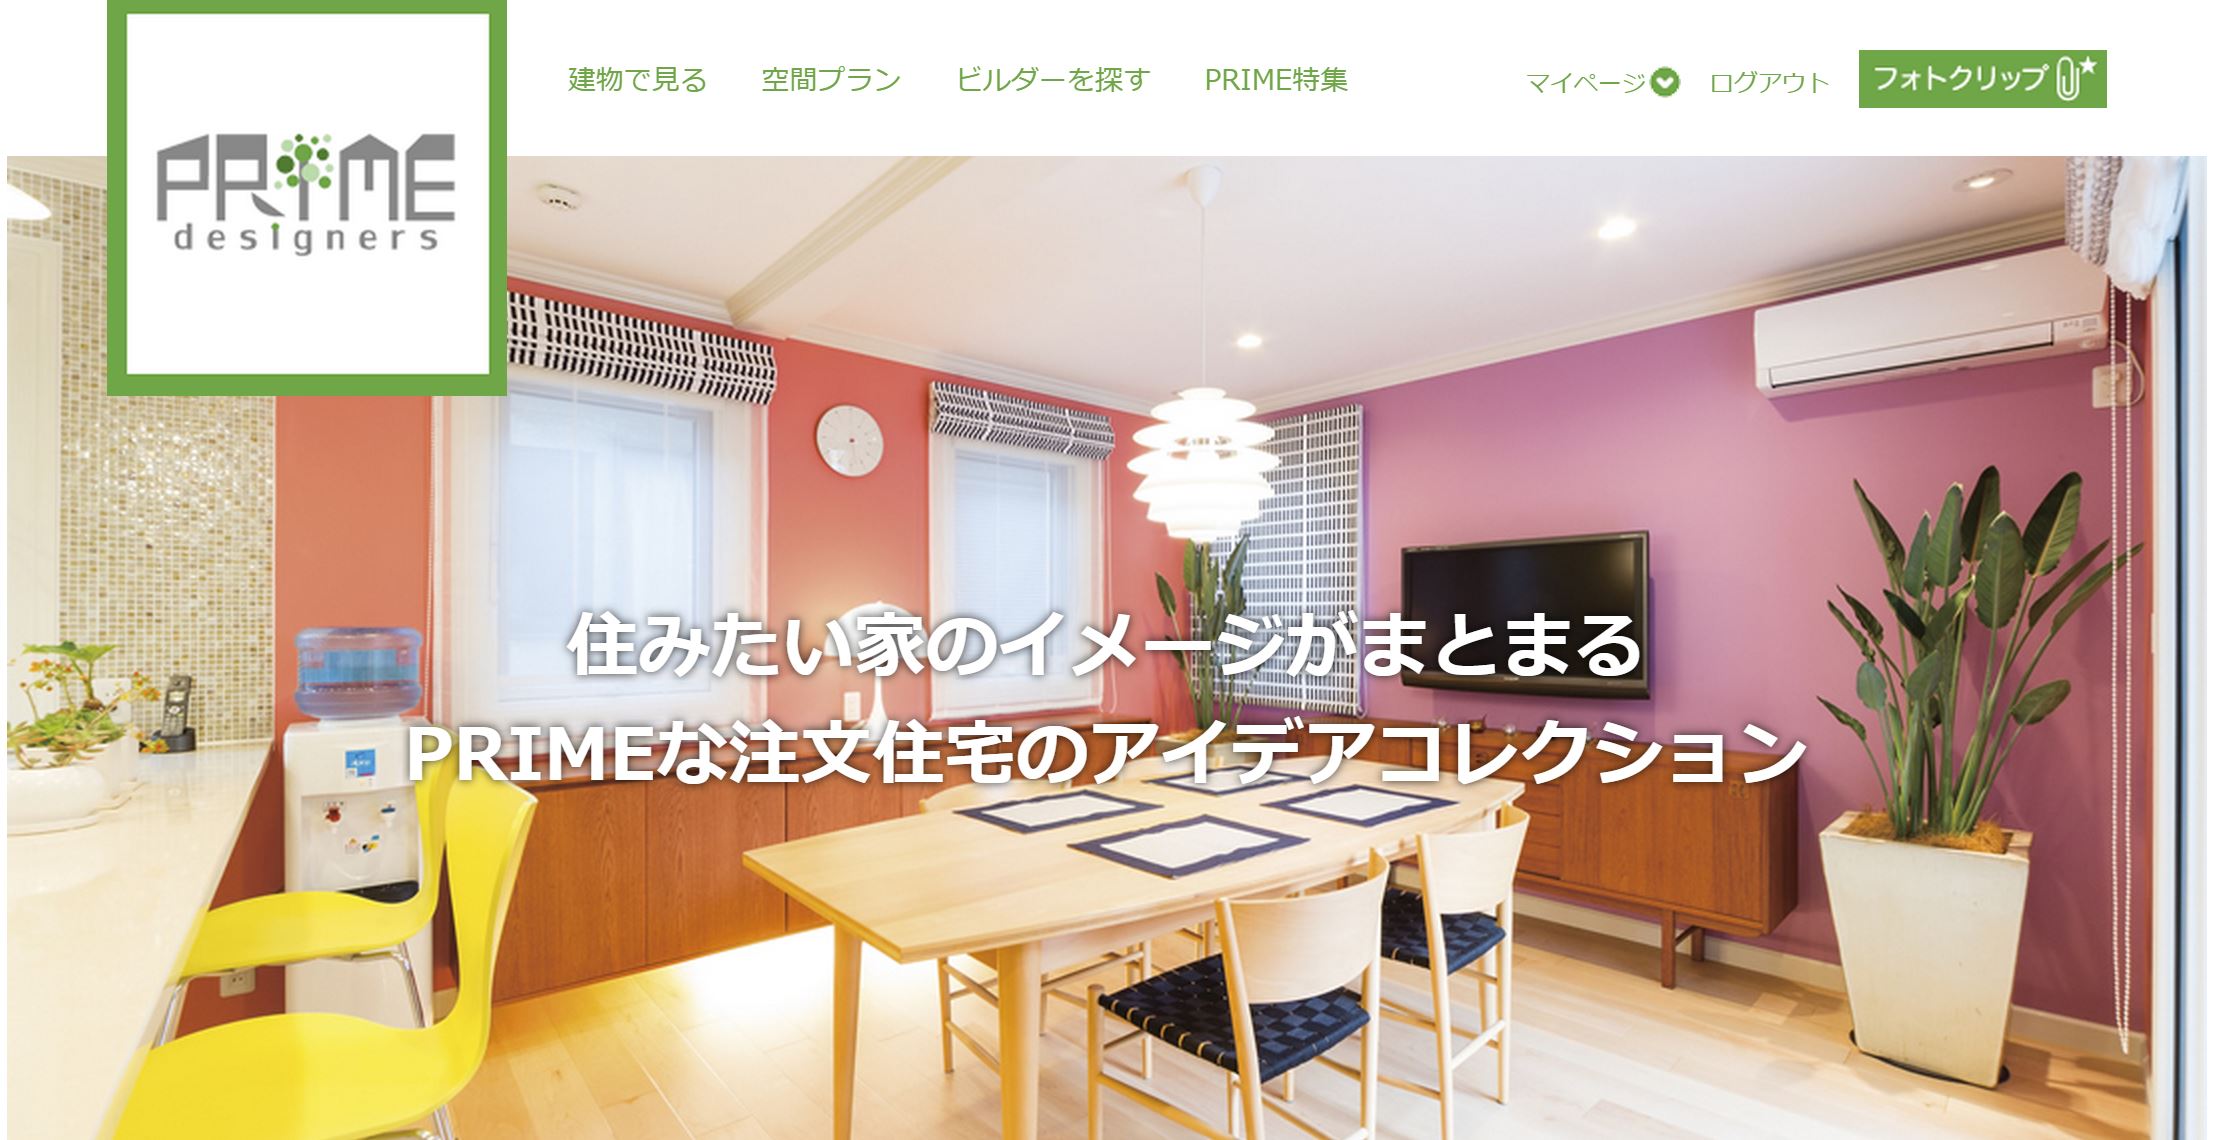 住みたい家のイメージがまとまる、10万円の新築祝いがもらえる ...